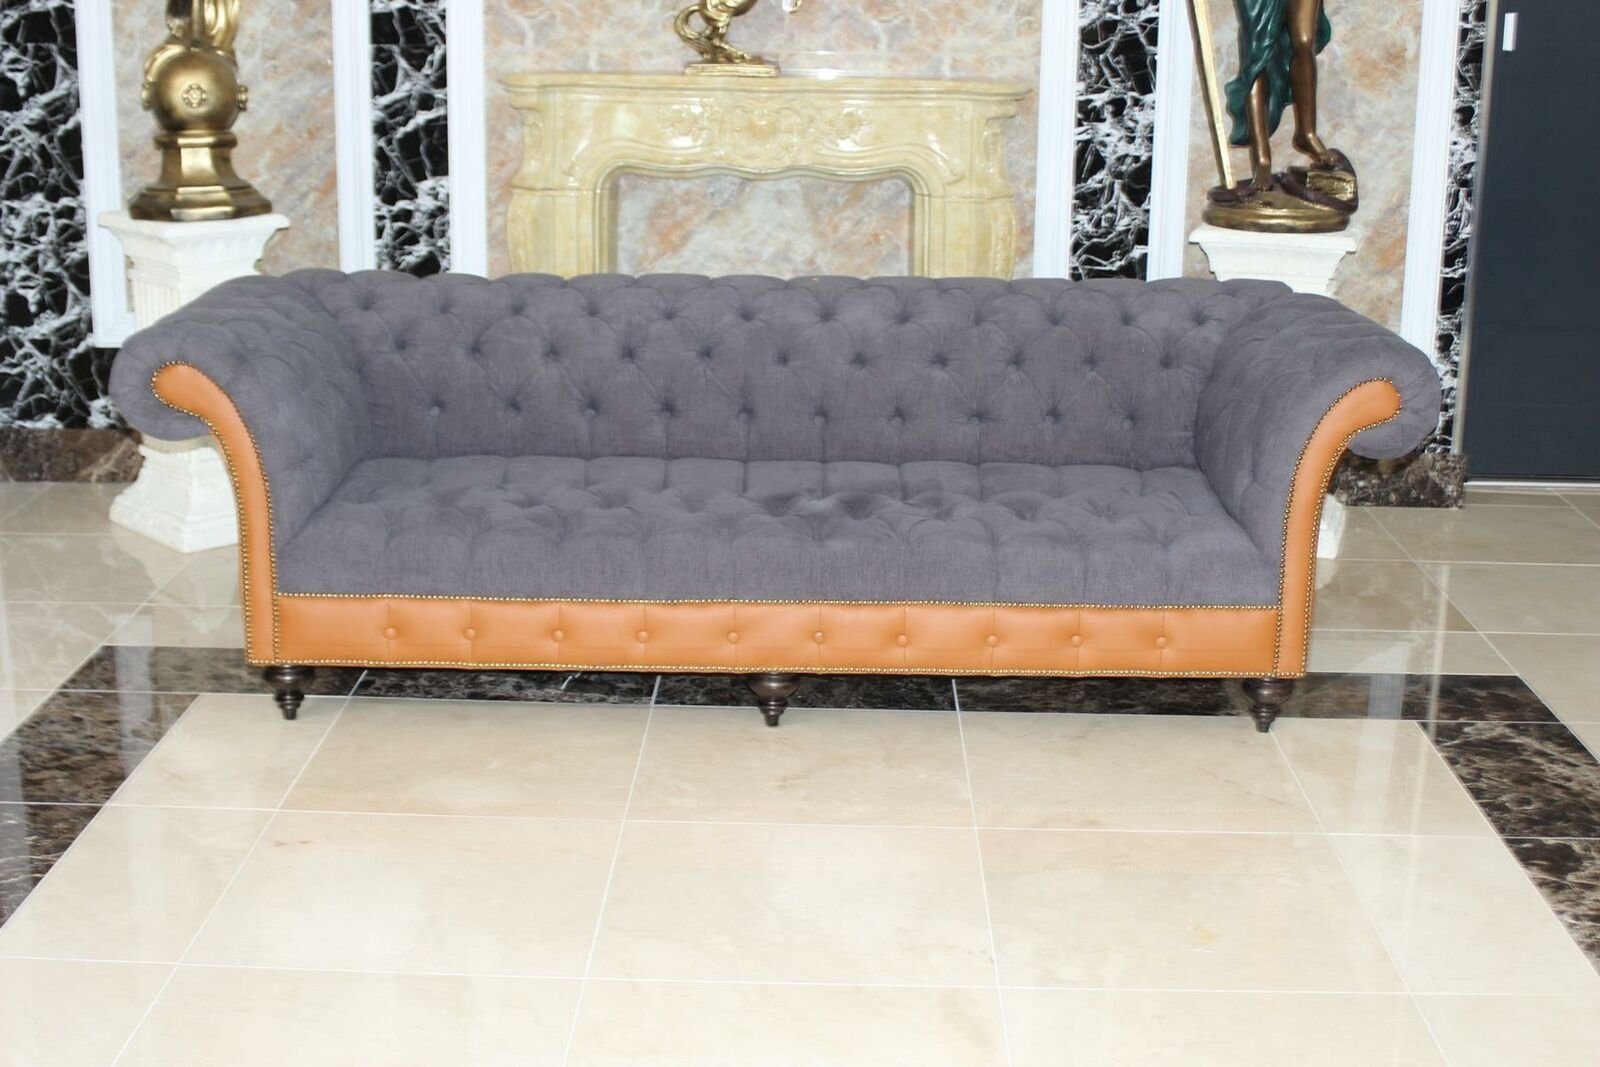 JVmoebel 4-Sitzer Couch Polster Sofas 1 Sofort, Textil Teile Couchen Sofa Klassische Sitzer 4